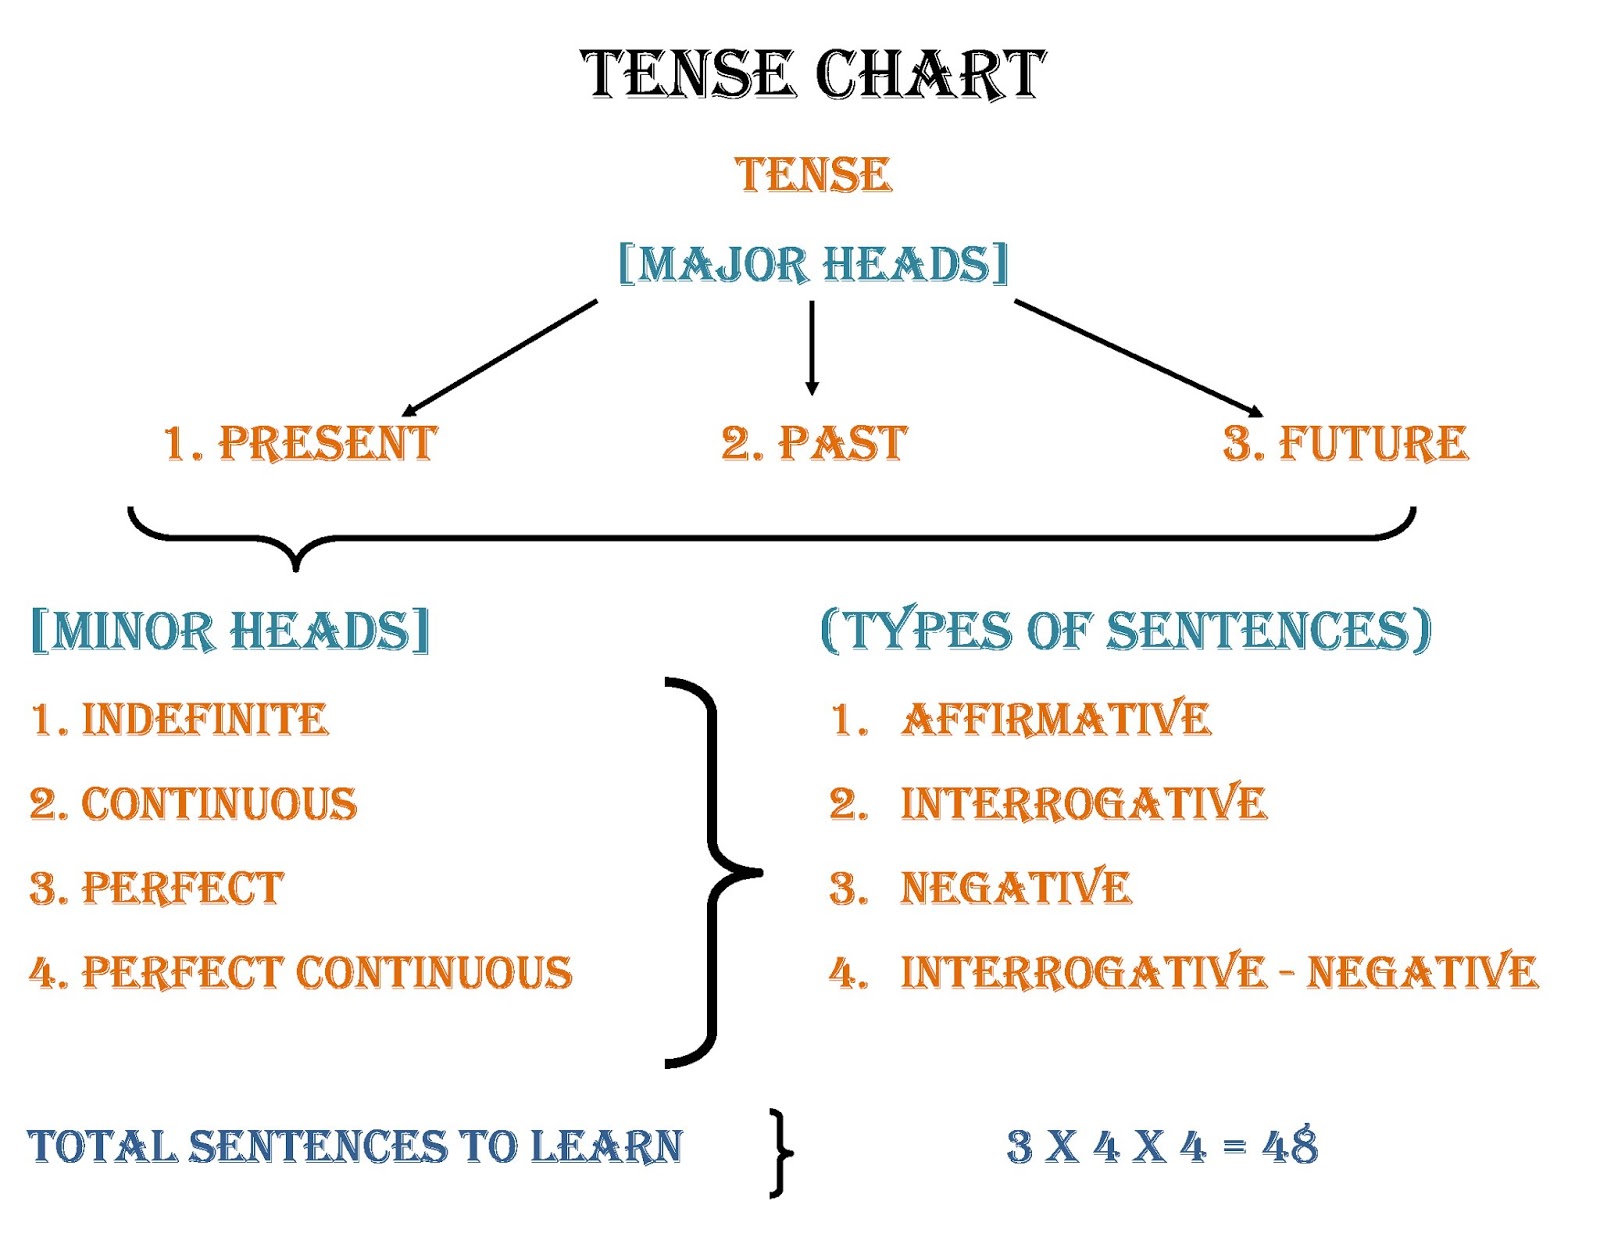 Tense Helping Verb Chart